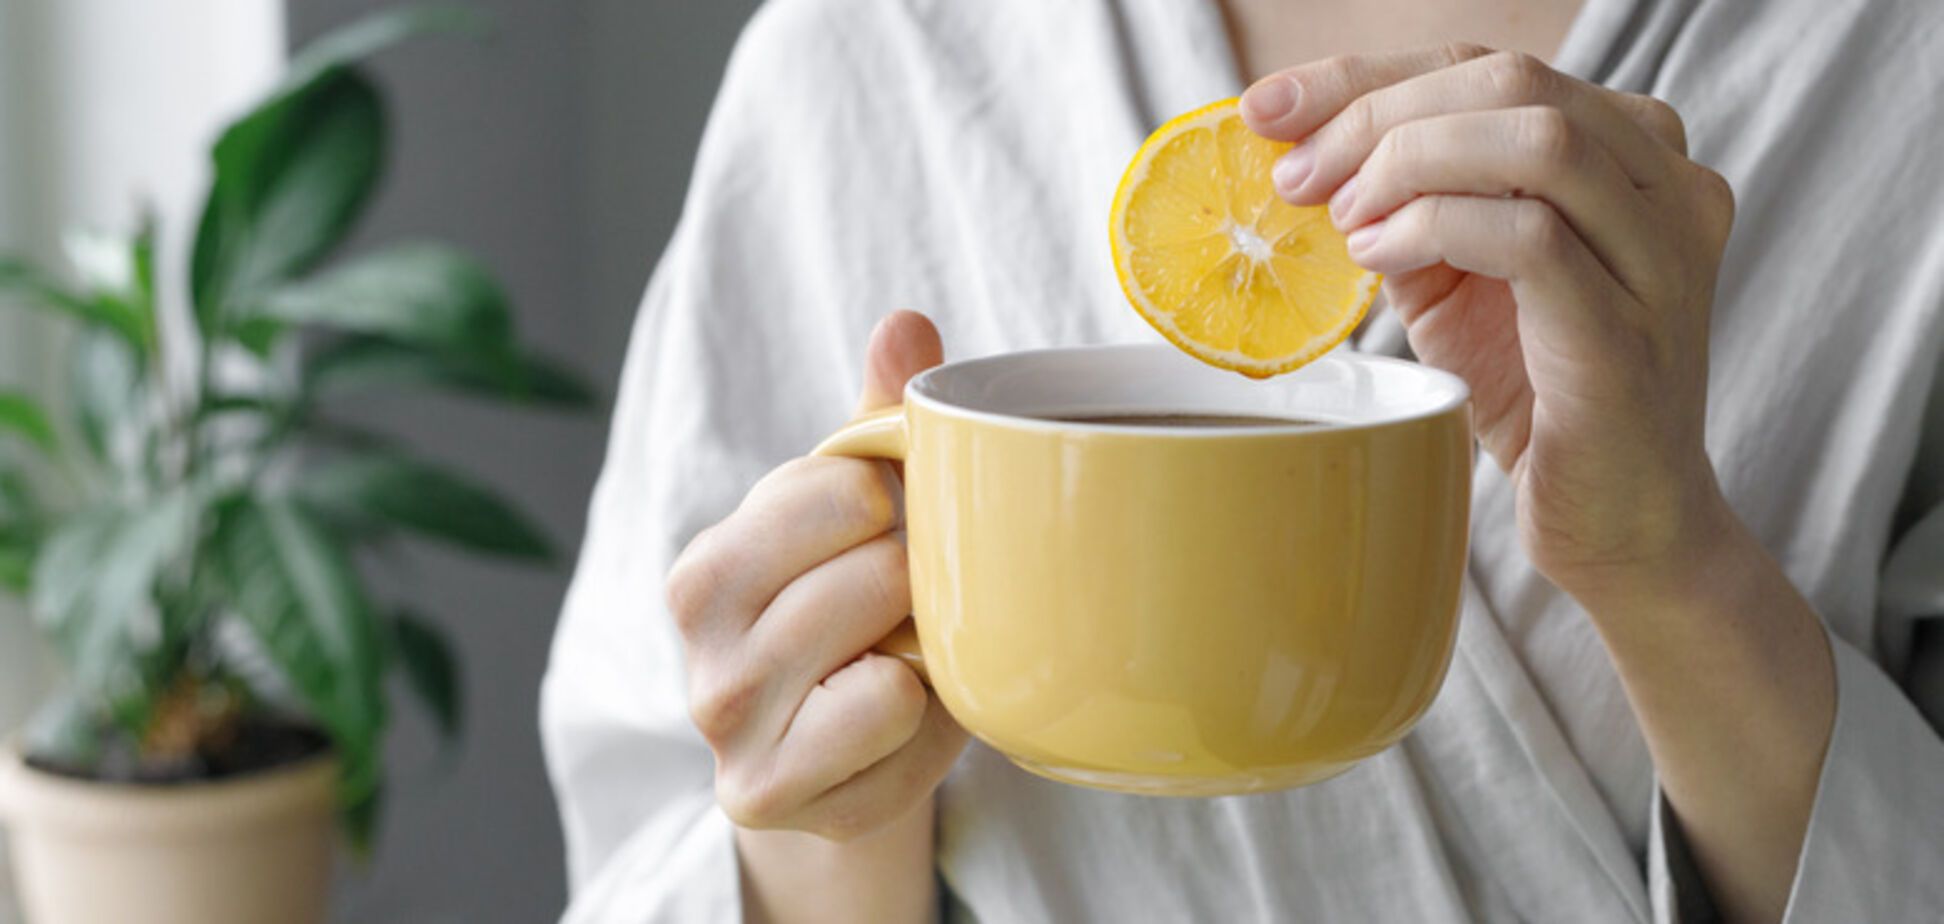 Обязательно нужно пить зимой: рецепт витаминной заготовки для вкусного домашнего чая